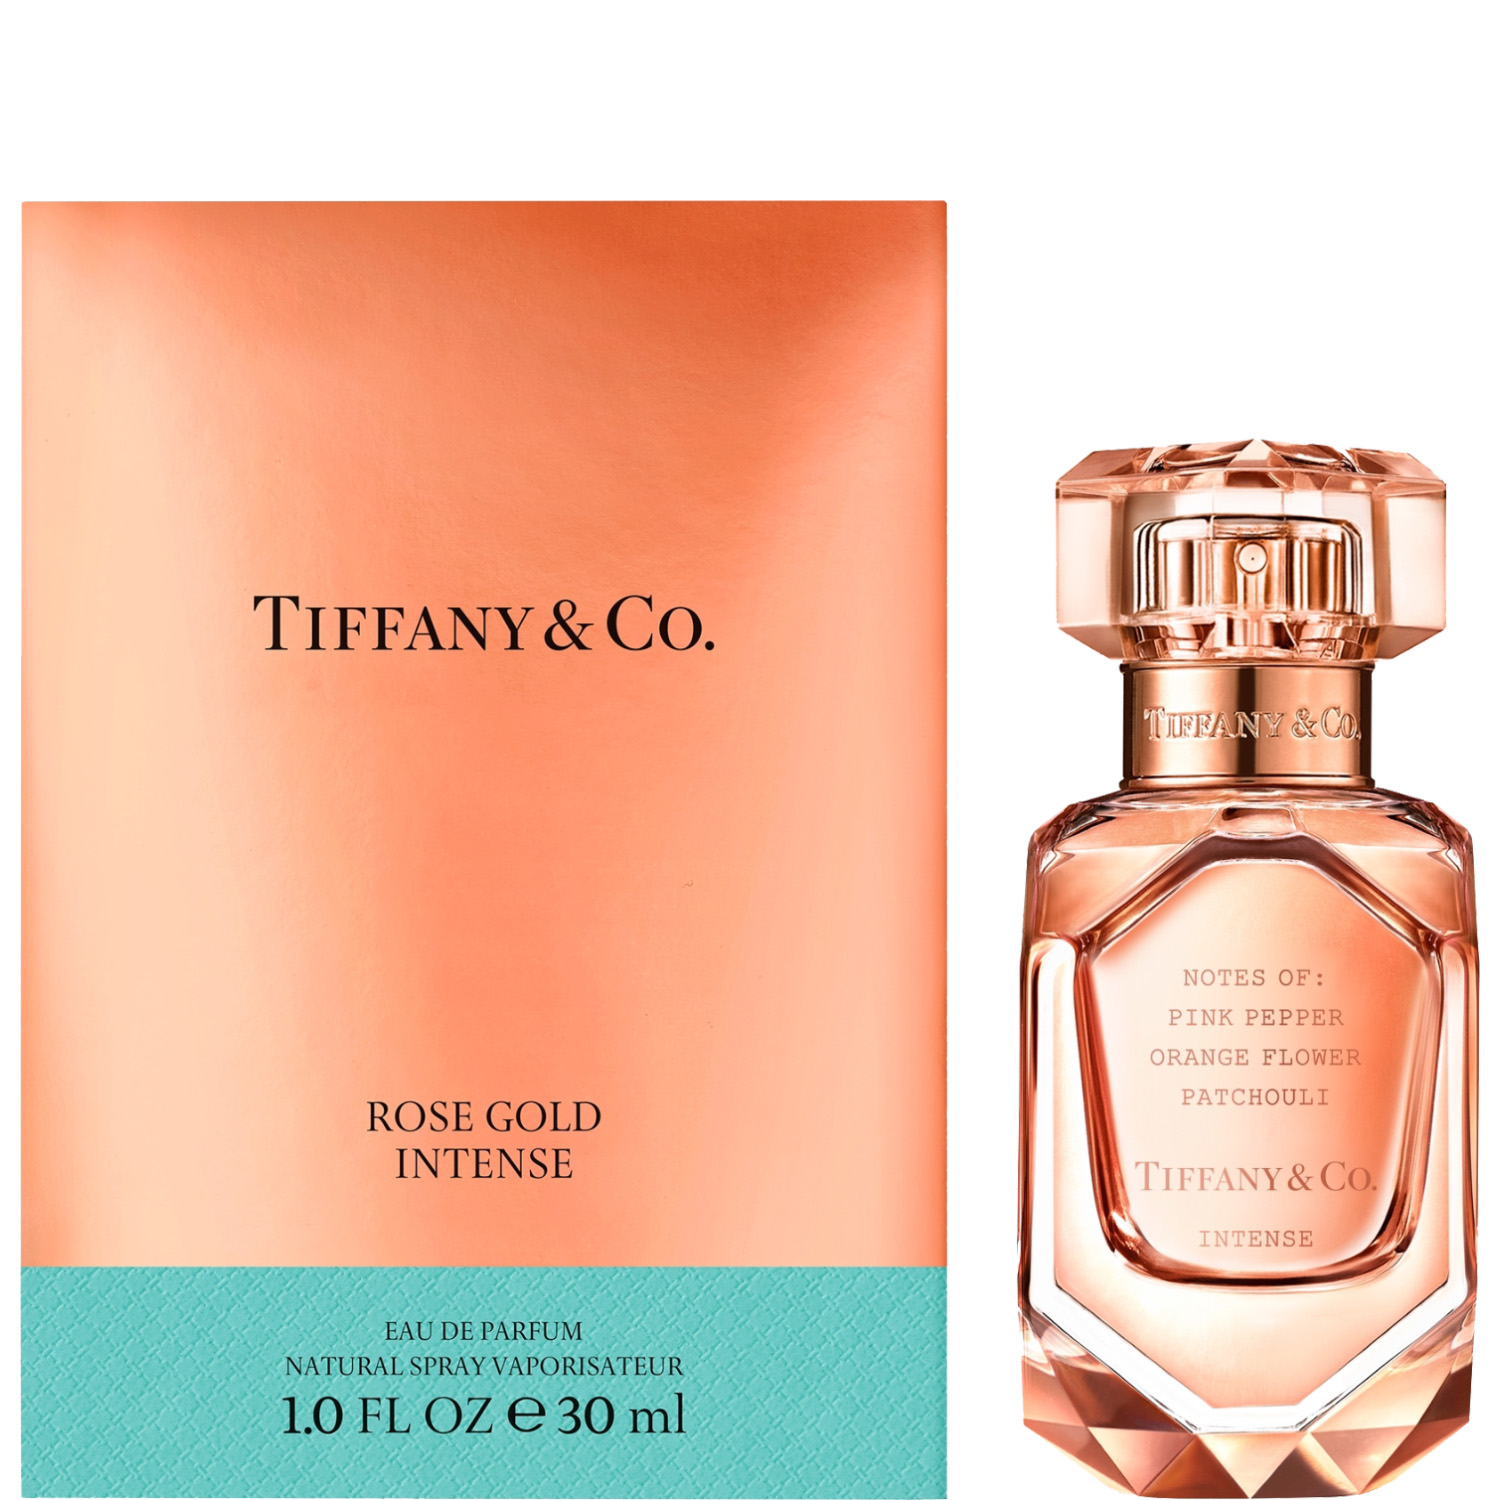 Tiffany & Co. Rose Gold Intense Eau de Parfum 30ml